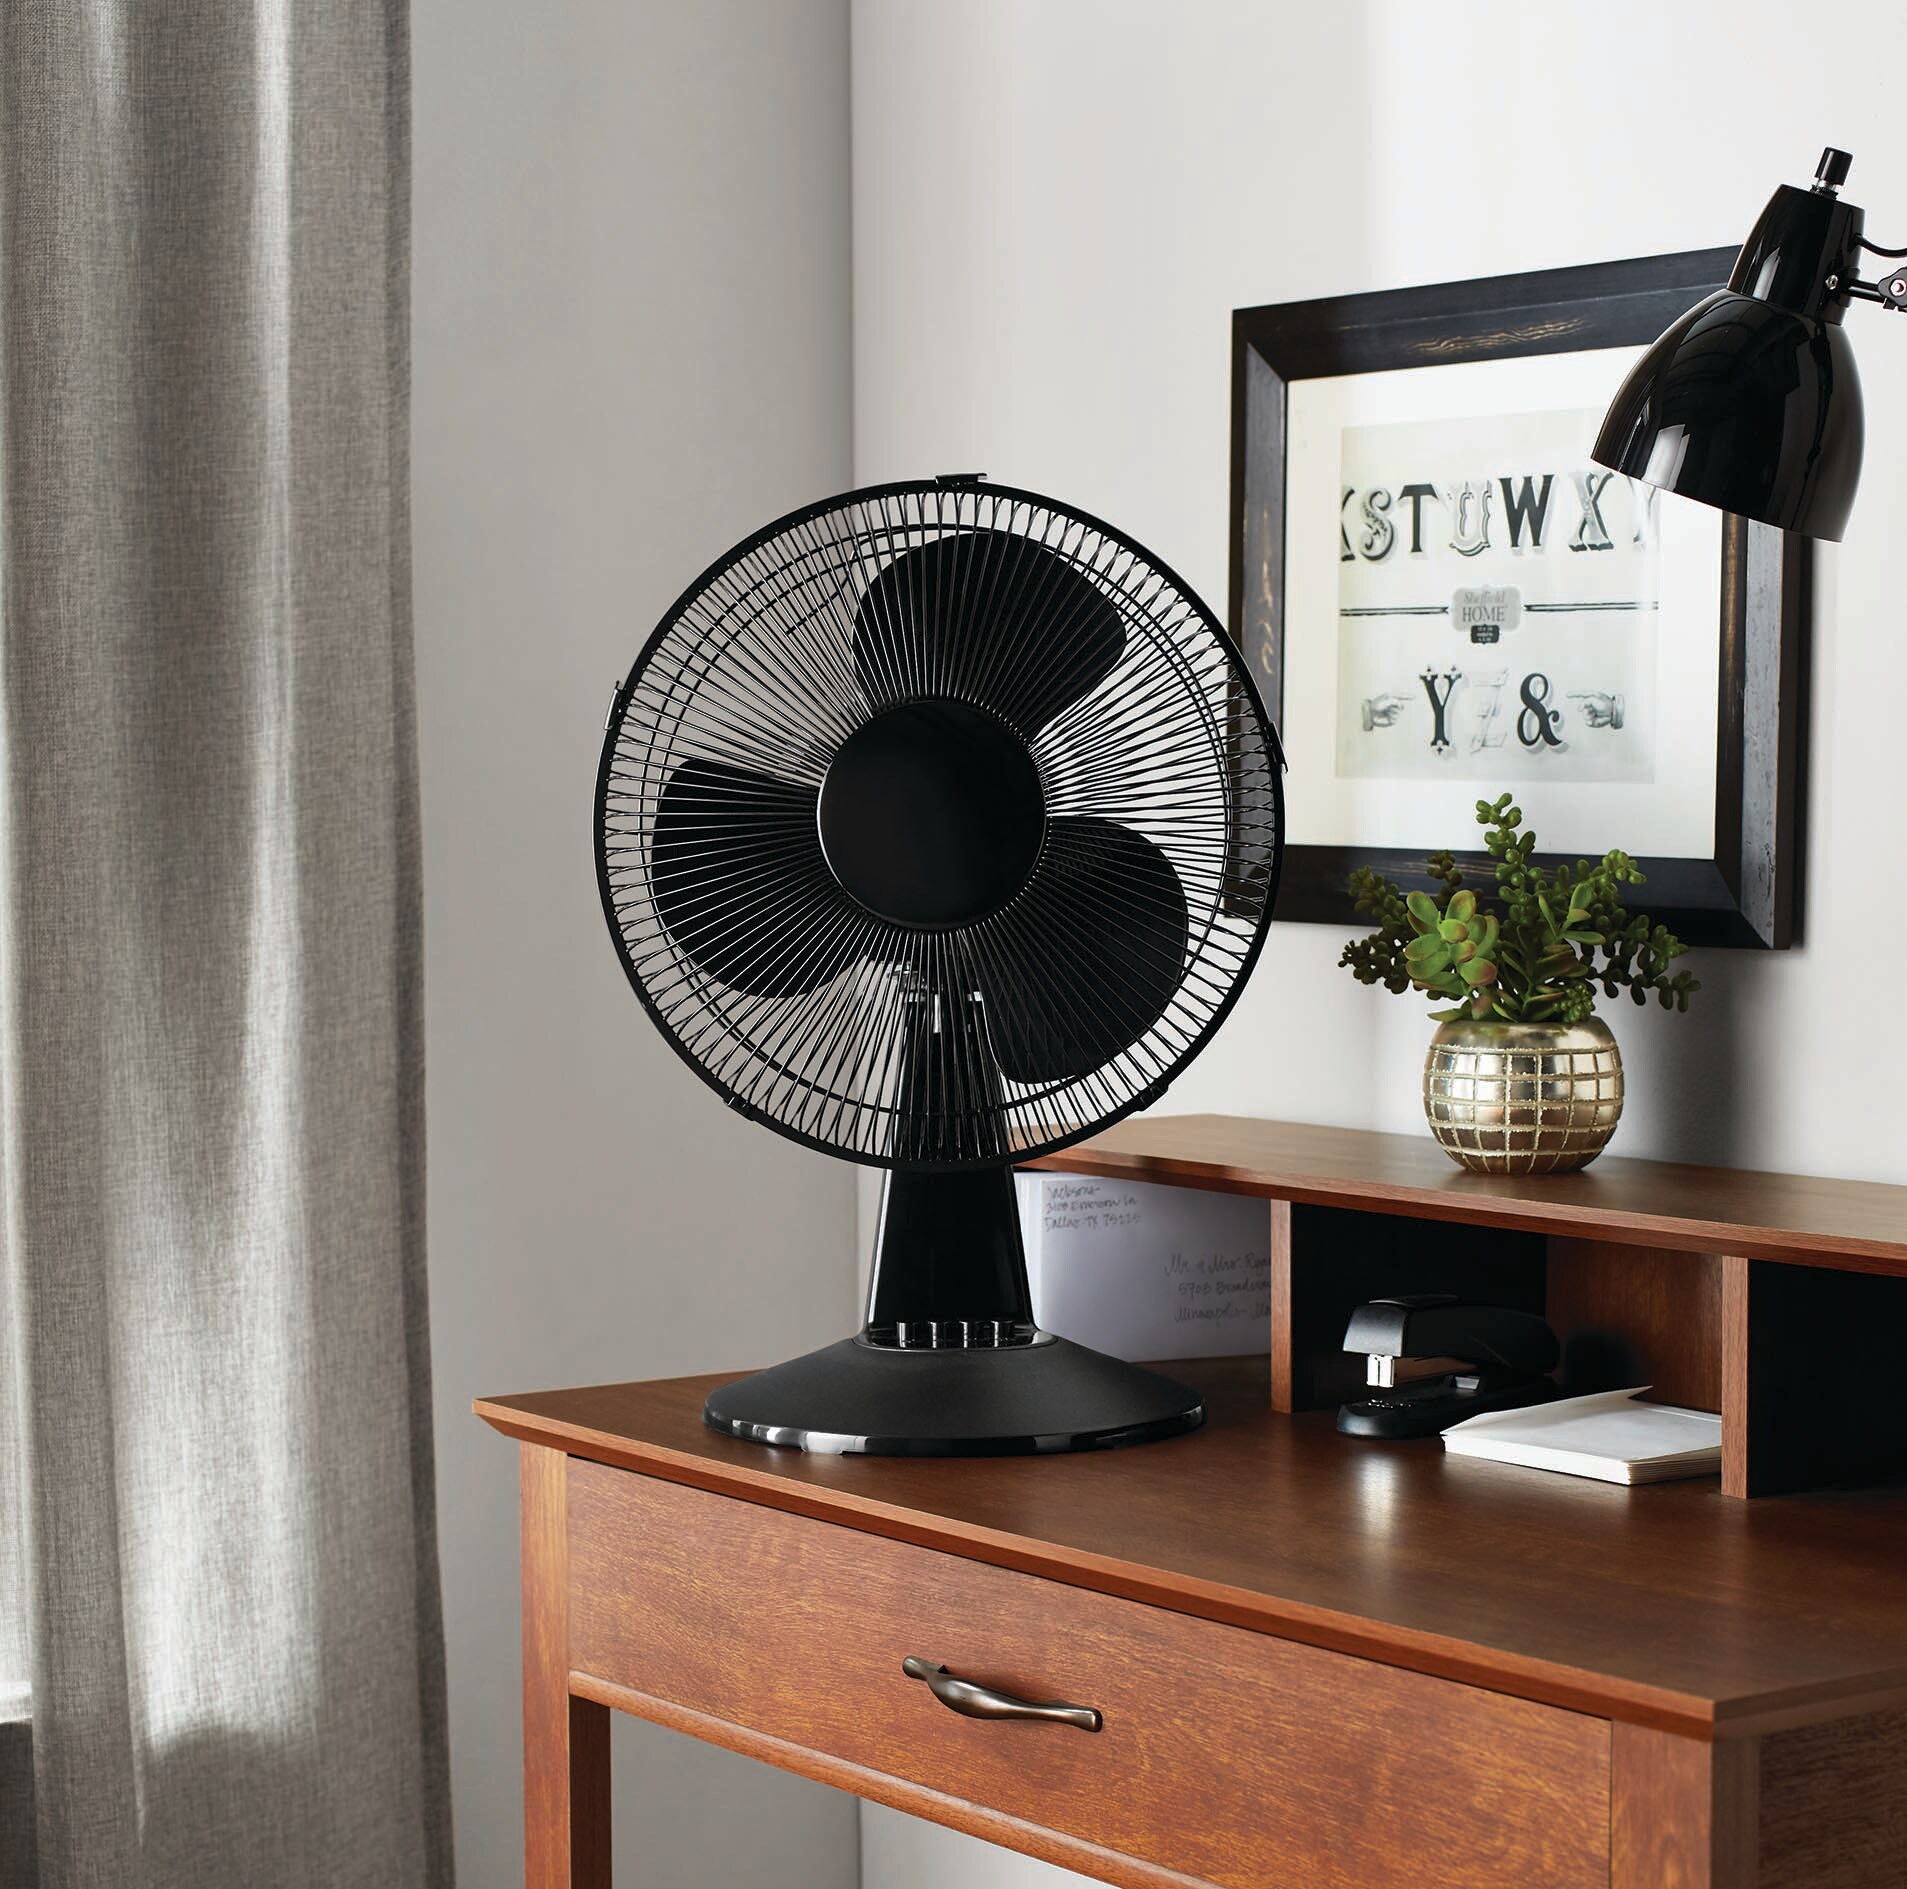 NETTA Electric Desk Fan 12 Inch,3-Speed Oscillating Quiet Cooling Table Fan 40W Black/Silve 